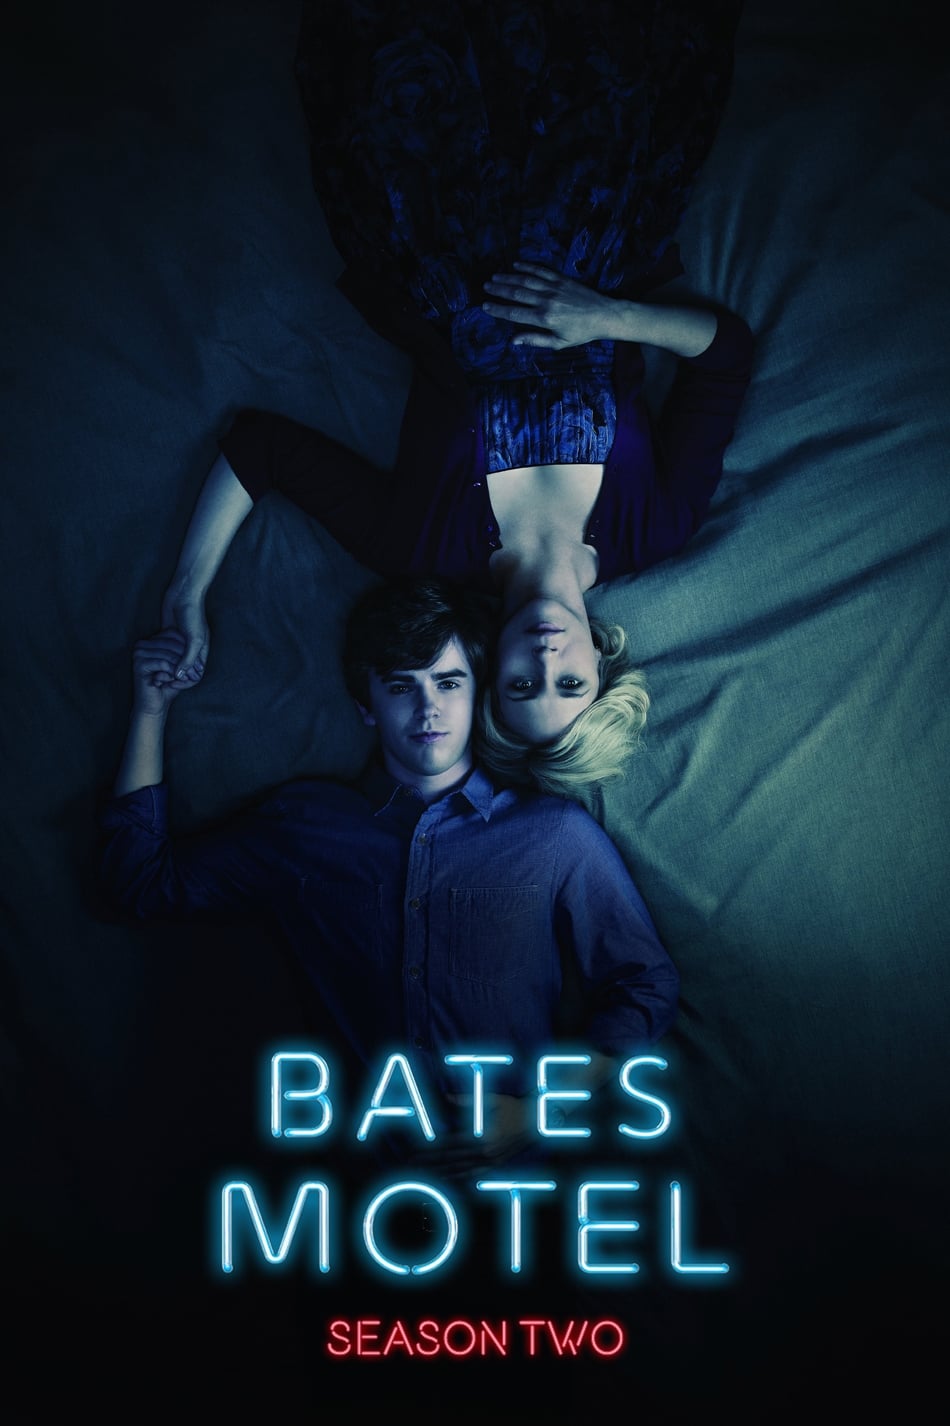 ดูหนังออนไลน์ฟรี Bates Motel (2014) Season 2 ซับไทย EP 9 เบส โมเทล ปี2 ตอนที่9 (ซับไทย)